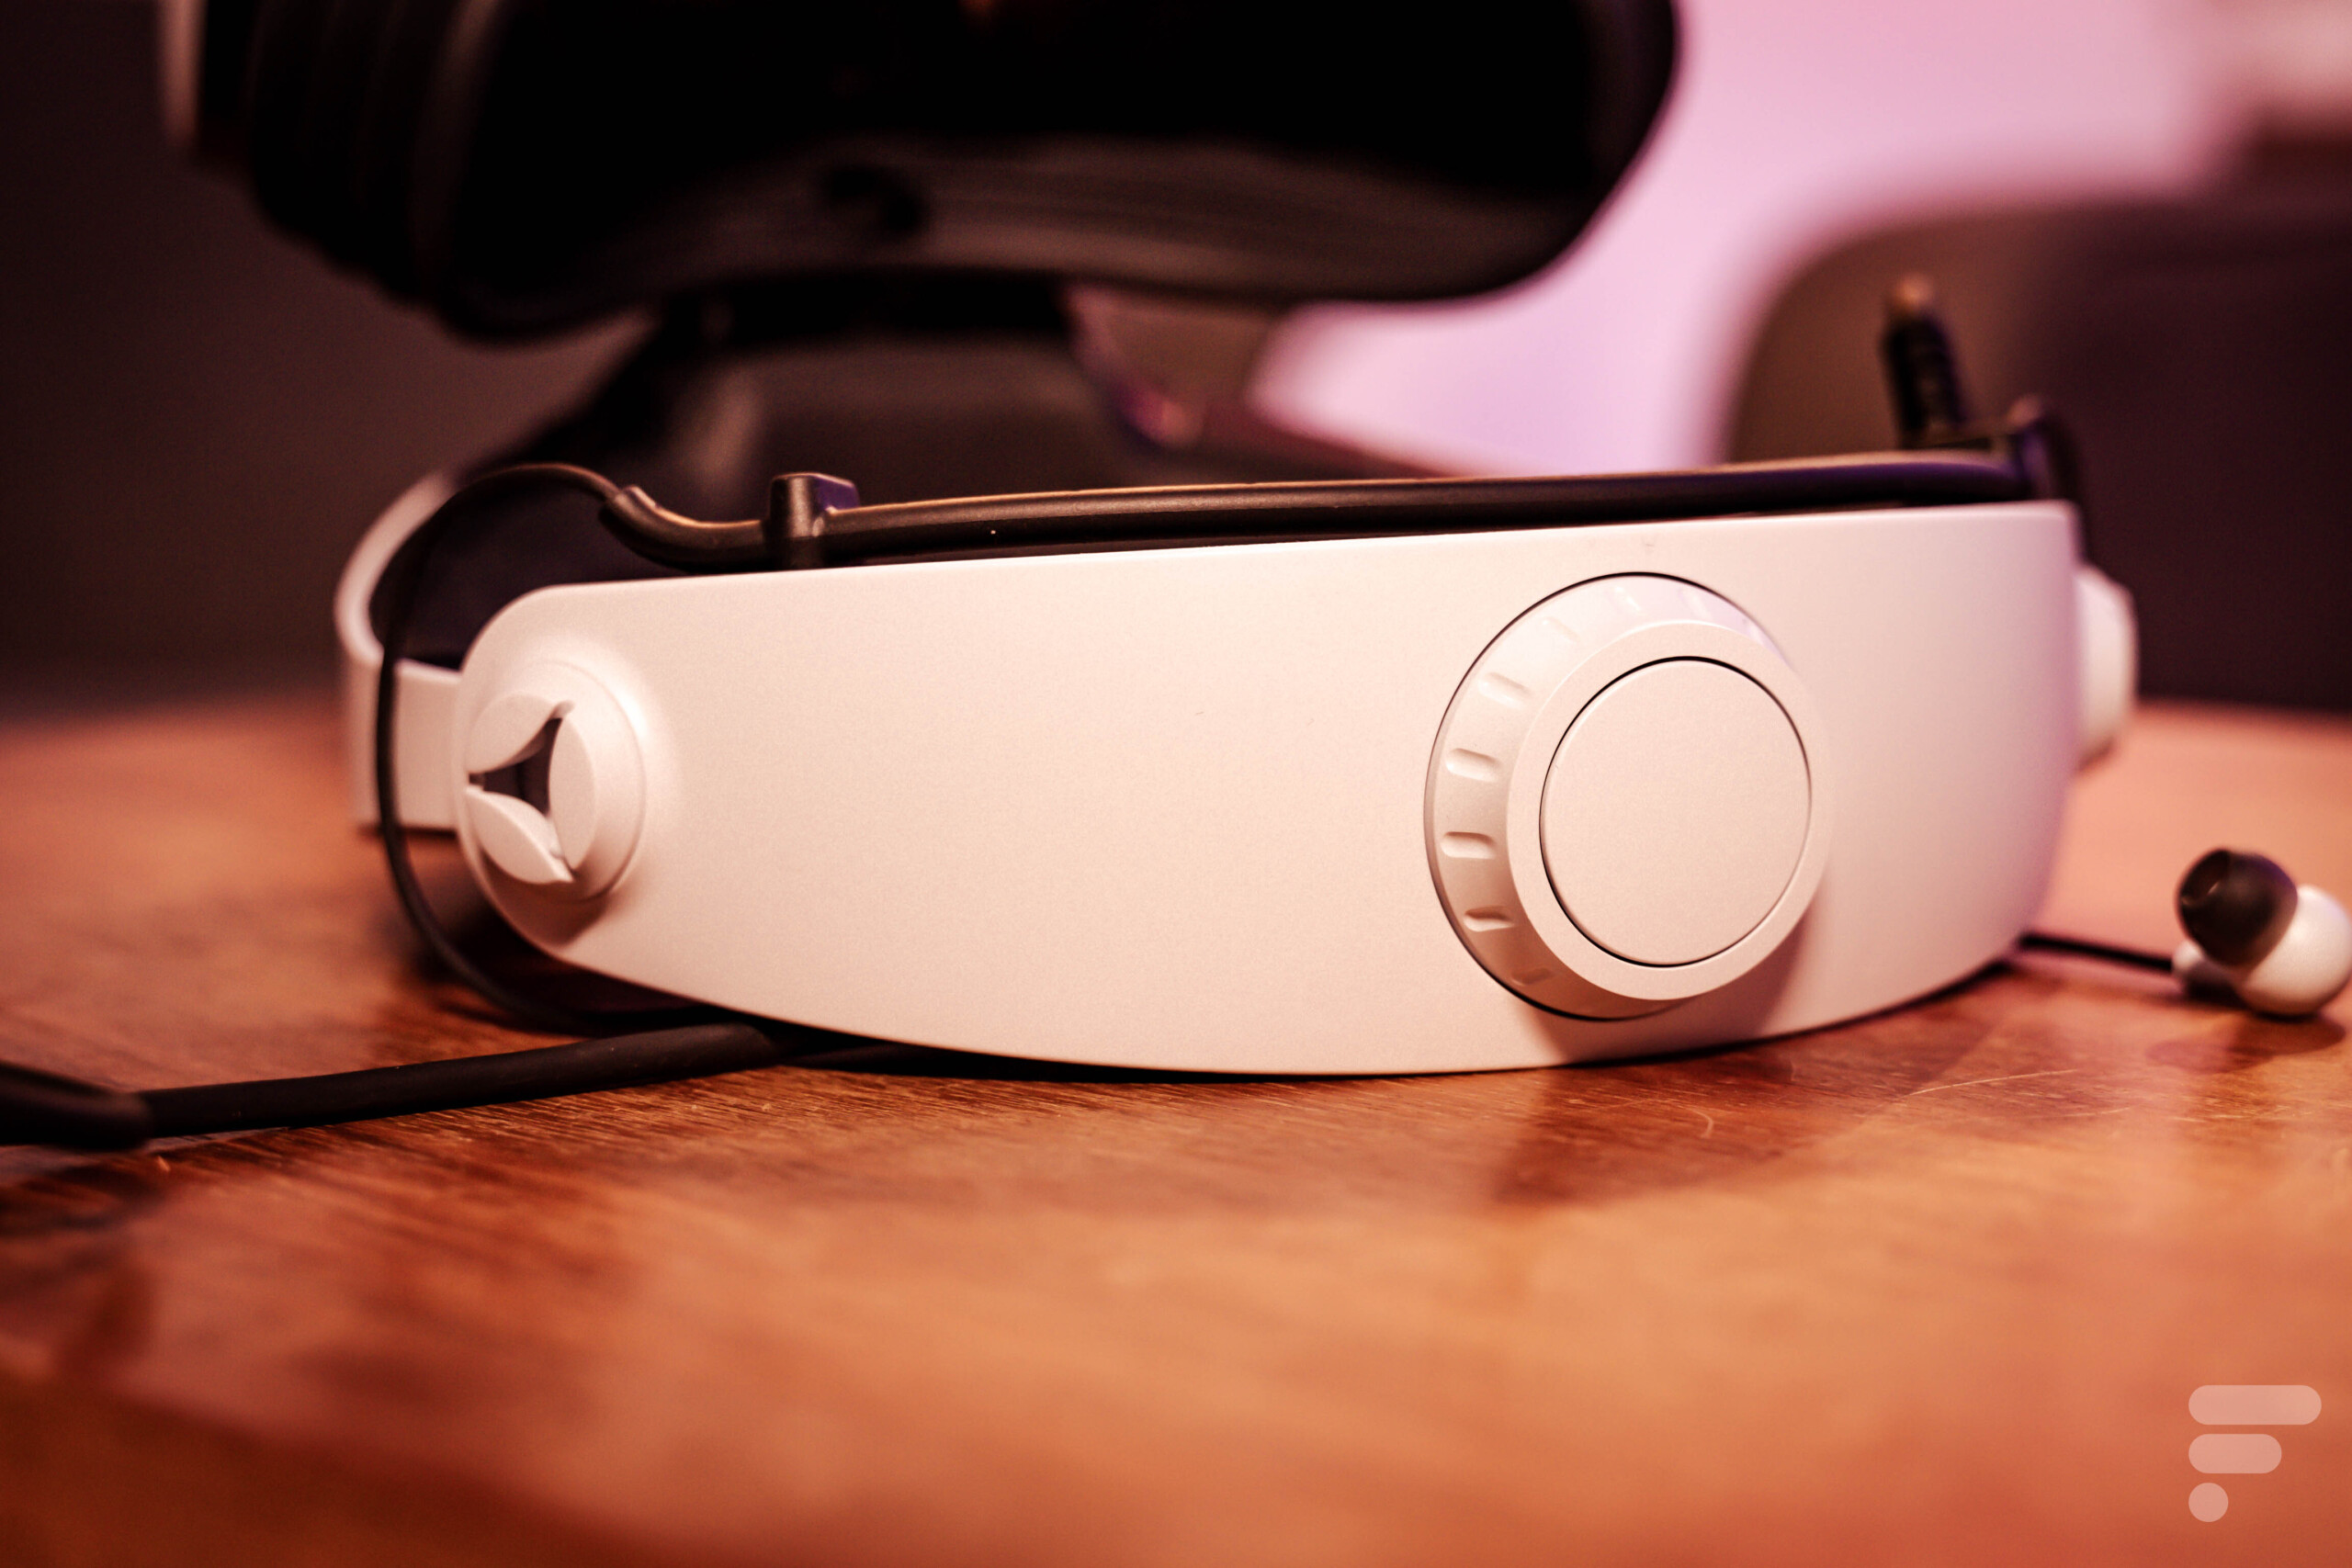 PSVR 2 : Sony dément sa décision sur le casque VR, une bonne nouvelle ?